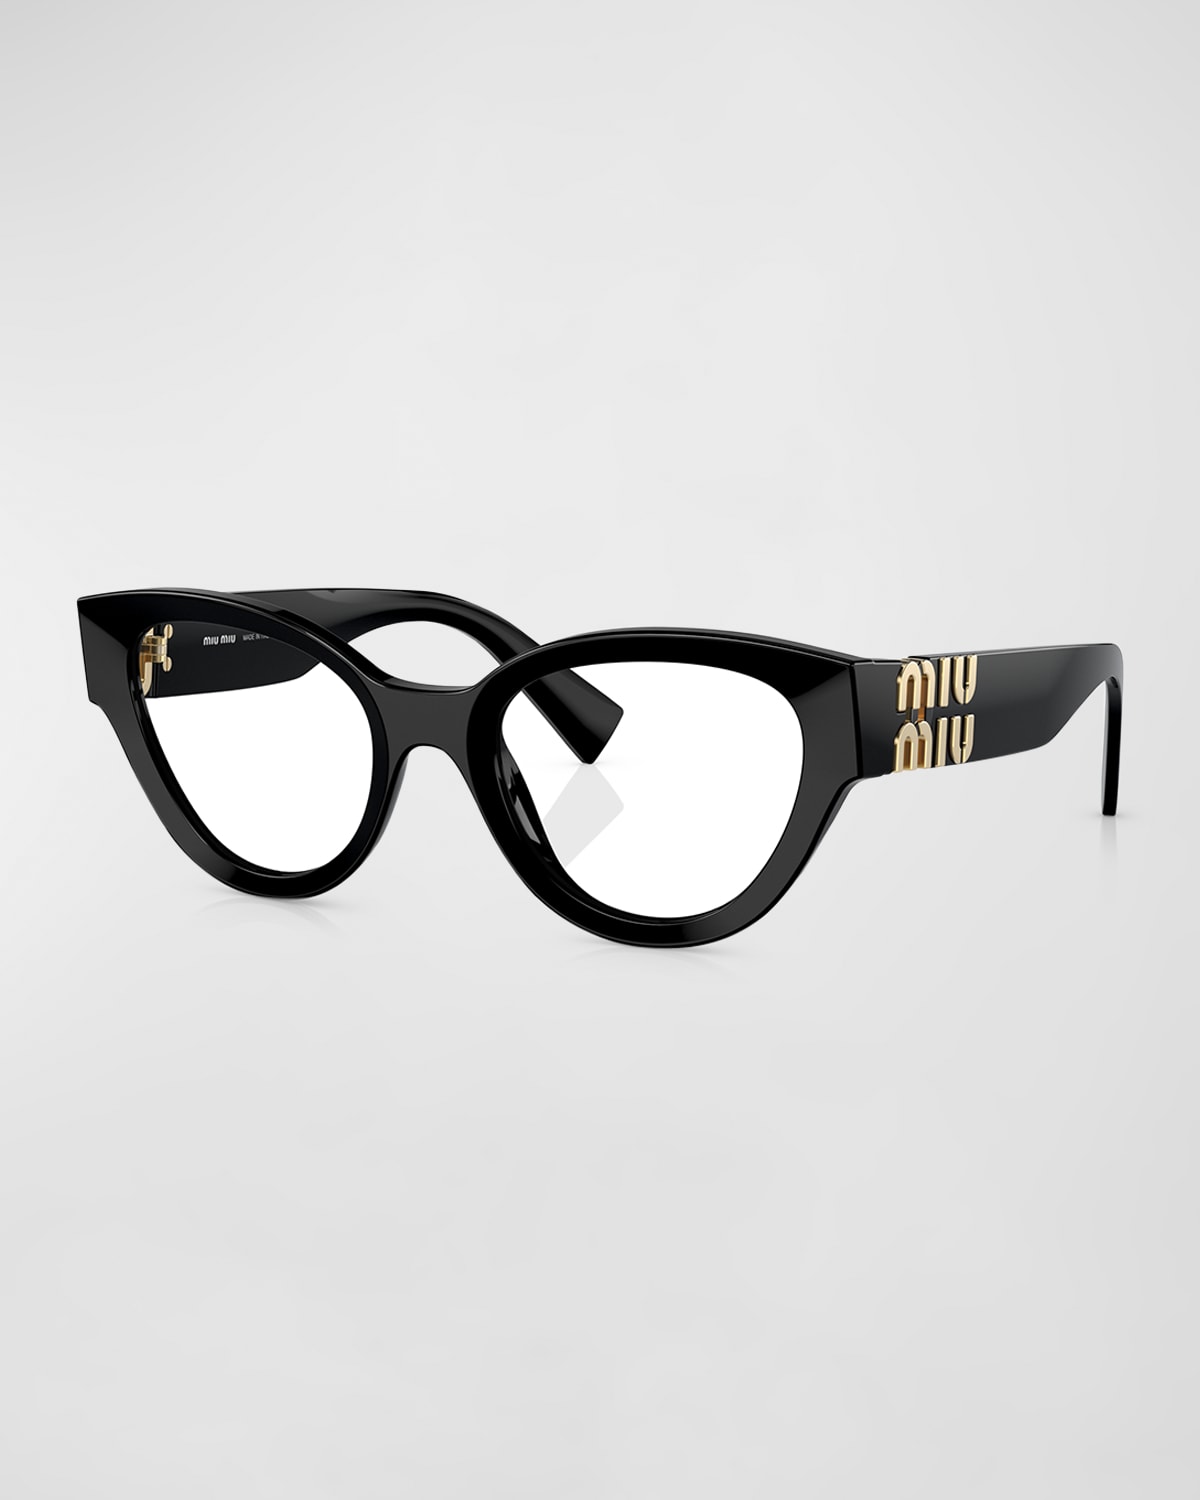 Miu Miu Logo Black Acetate & Plastic Round Glasses